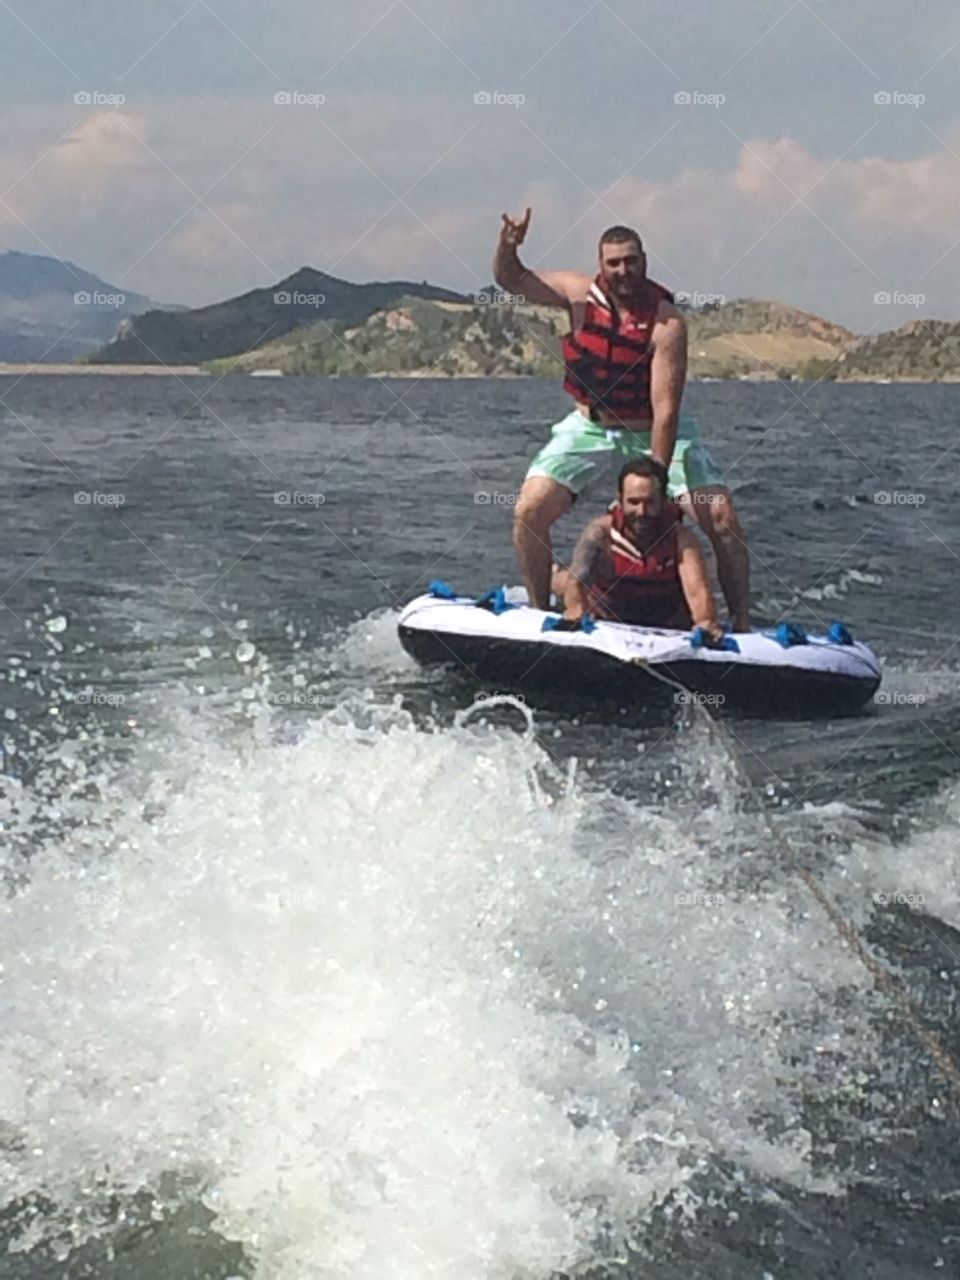 Fun in the water